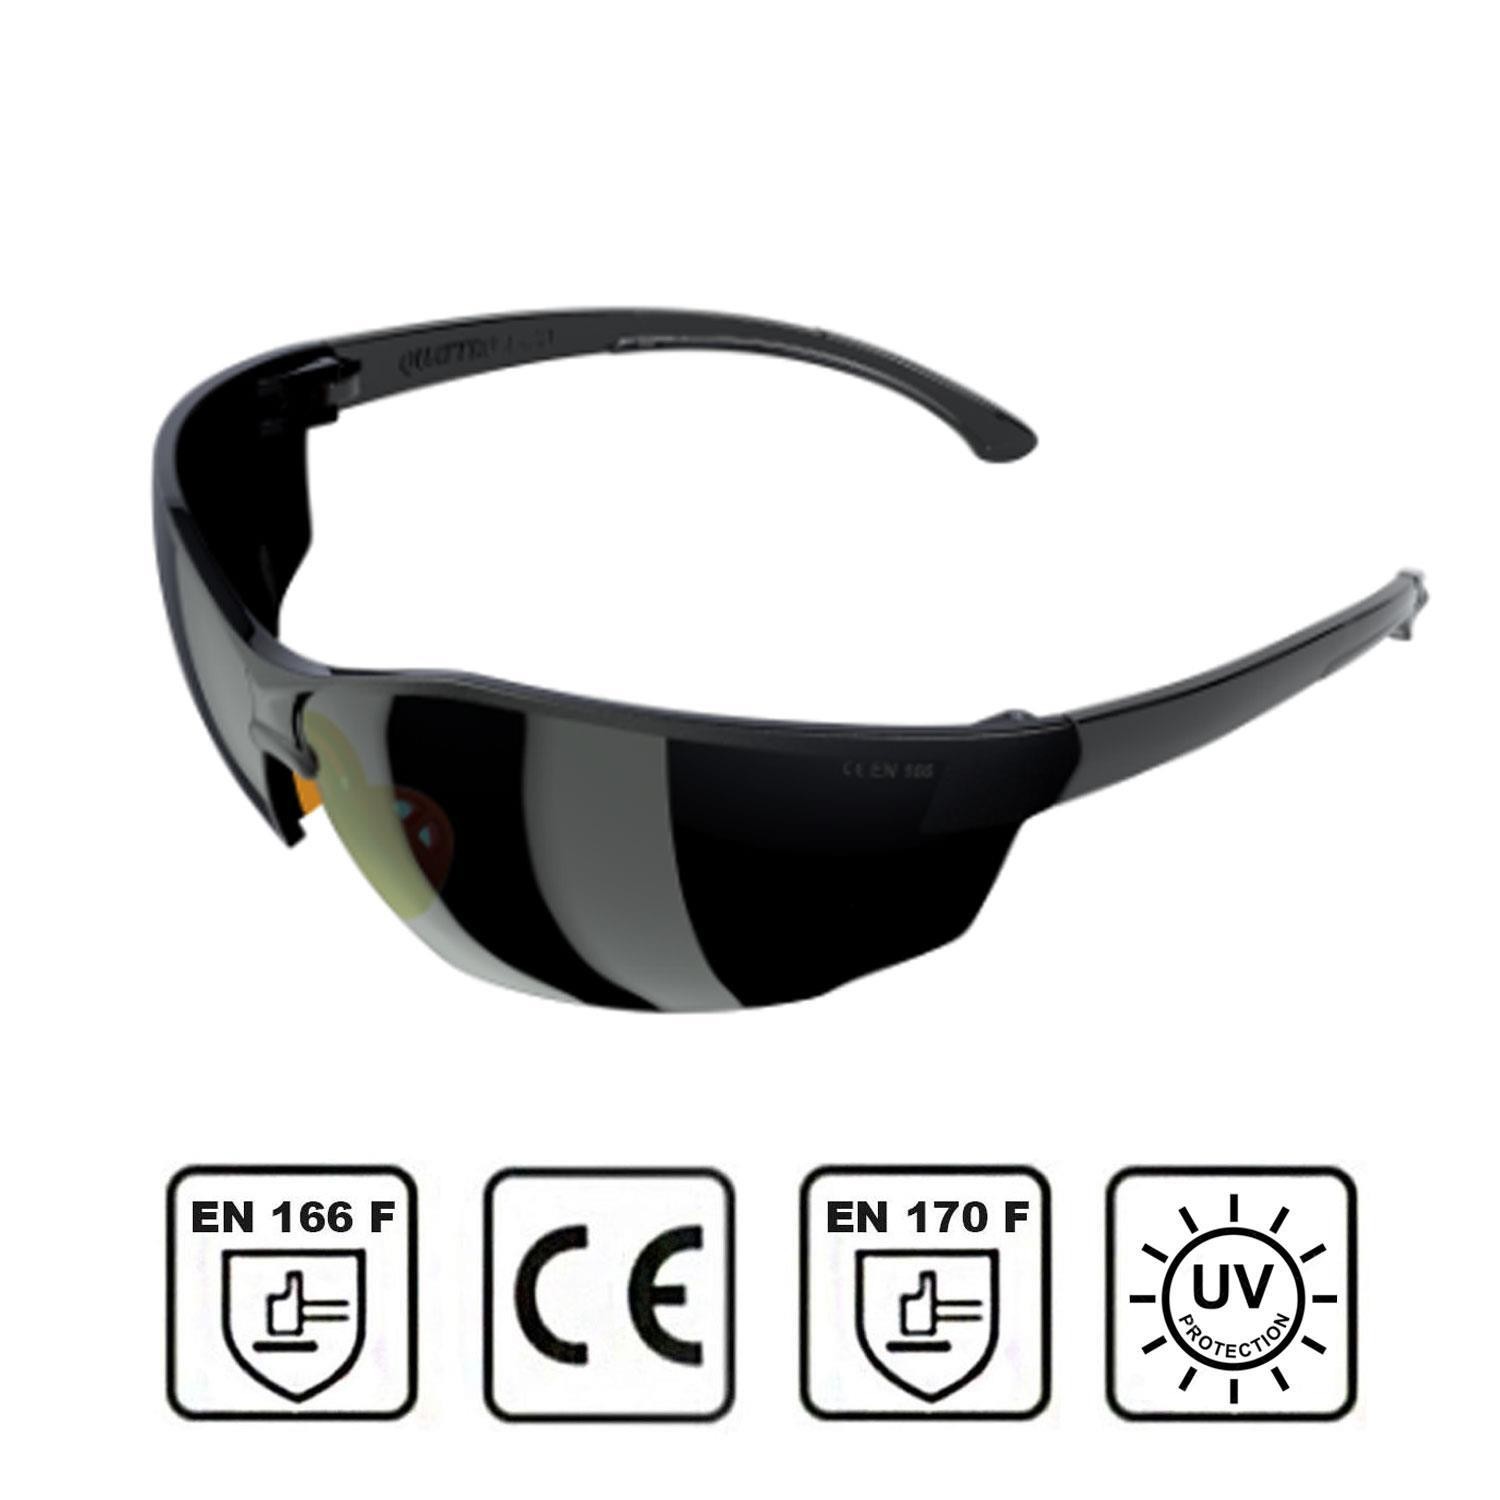 İş Güvenlik Gözlüğü UV Koruyucu Silikonlu Kaynak Gözlük S1100 Siyah 12 Adet